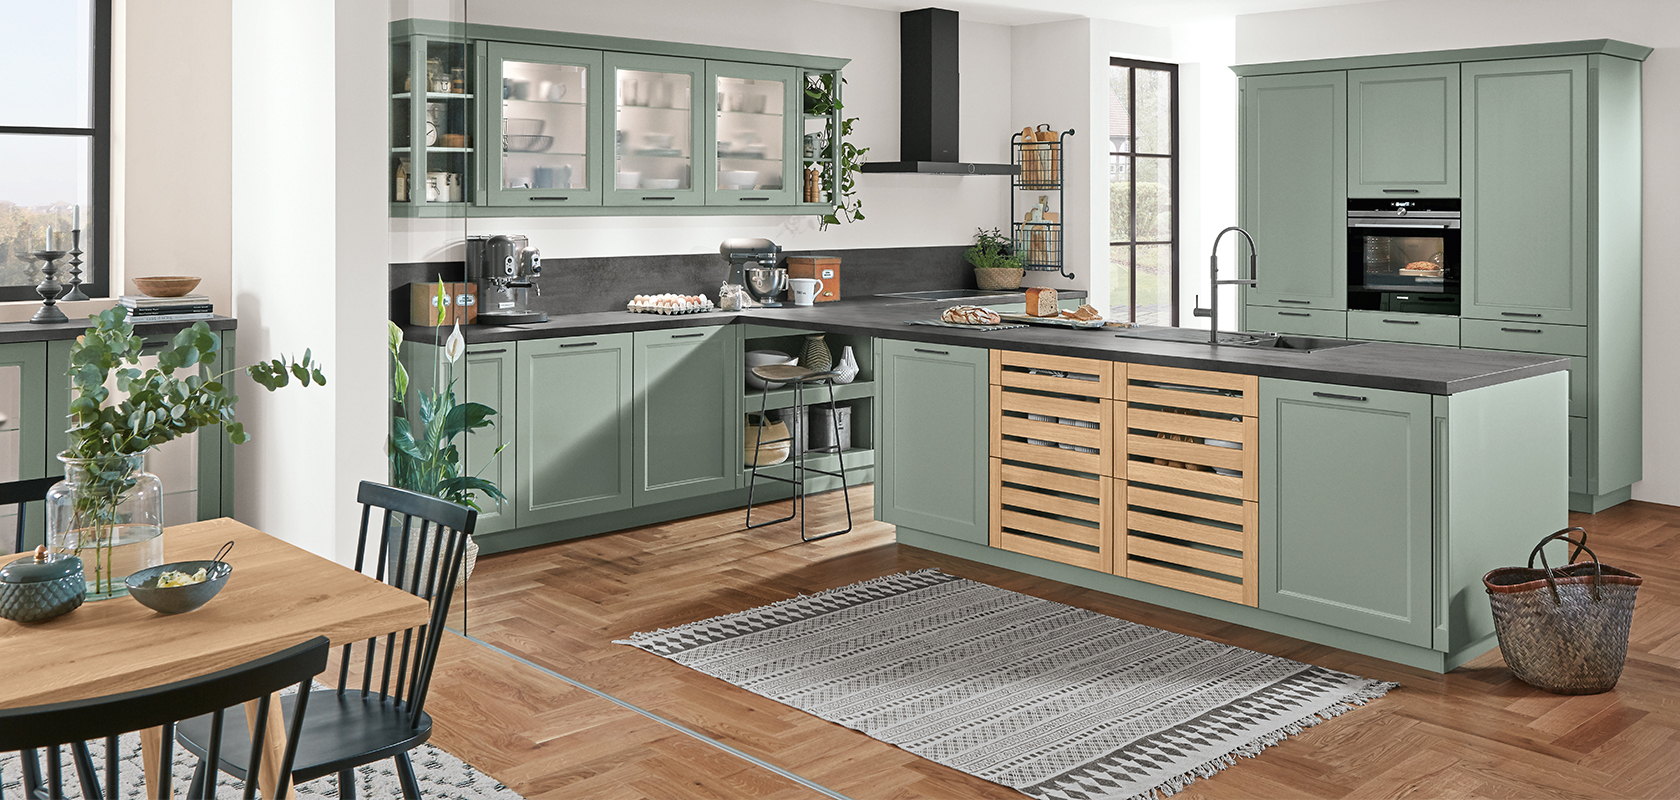 Geräumige Küche mit salbeigrünen Schränken, modernen Geräten und einem Holzboden, akzentuiert von natürlichem Licht und frischem Grün.